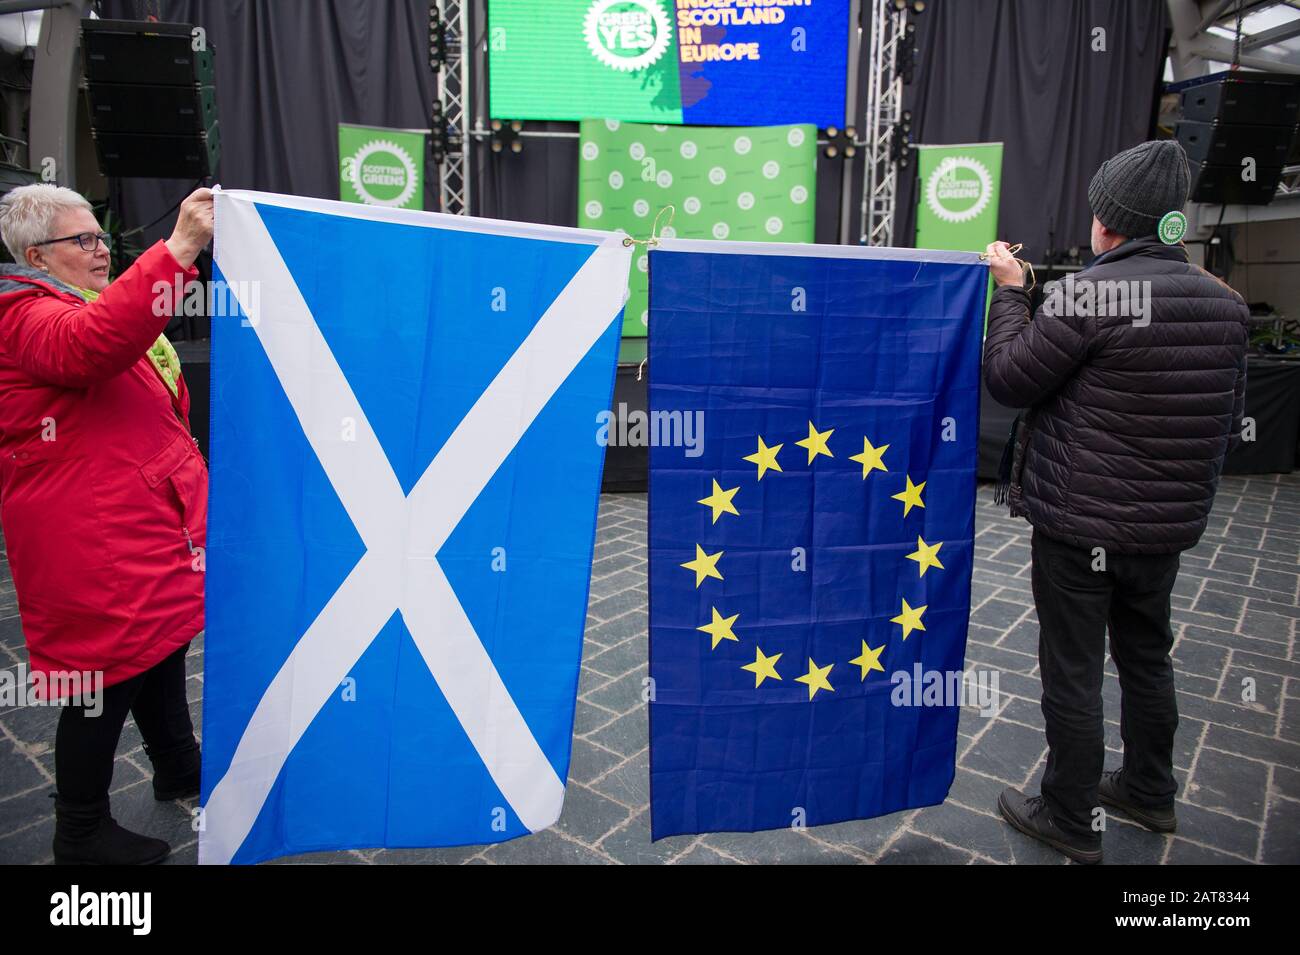 Glasgow, Royaume-Uni. 31 janvier 2020. Photo : scènes du lancement de la campagne. Le jour où le Royaume-Uni quitte l'Union européenne, les Verts écossais ont organisé un important rassemblement pour lancer une nouvelle campagne « Green Yes » pour que l'Écosse rejoigne à nouveau l'UE en tant que nation indépendante. Le co-dirigeant des Verts écossais Patrick Harvie est rejoint par le député européen de Ska Keller, président du groupe des Verts au Parlement européen, qui prononcera un discours. Crédit : Colin Fisher/Alay Live News Banque D'Images